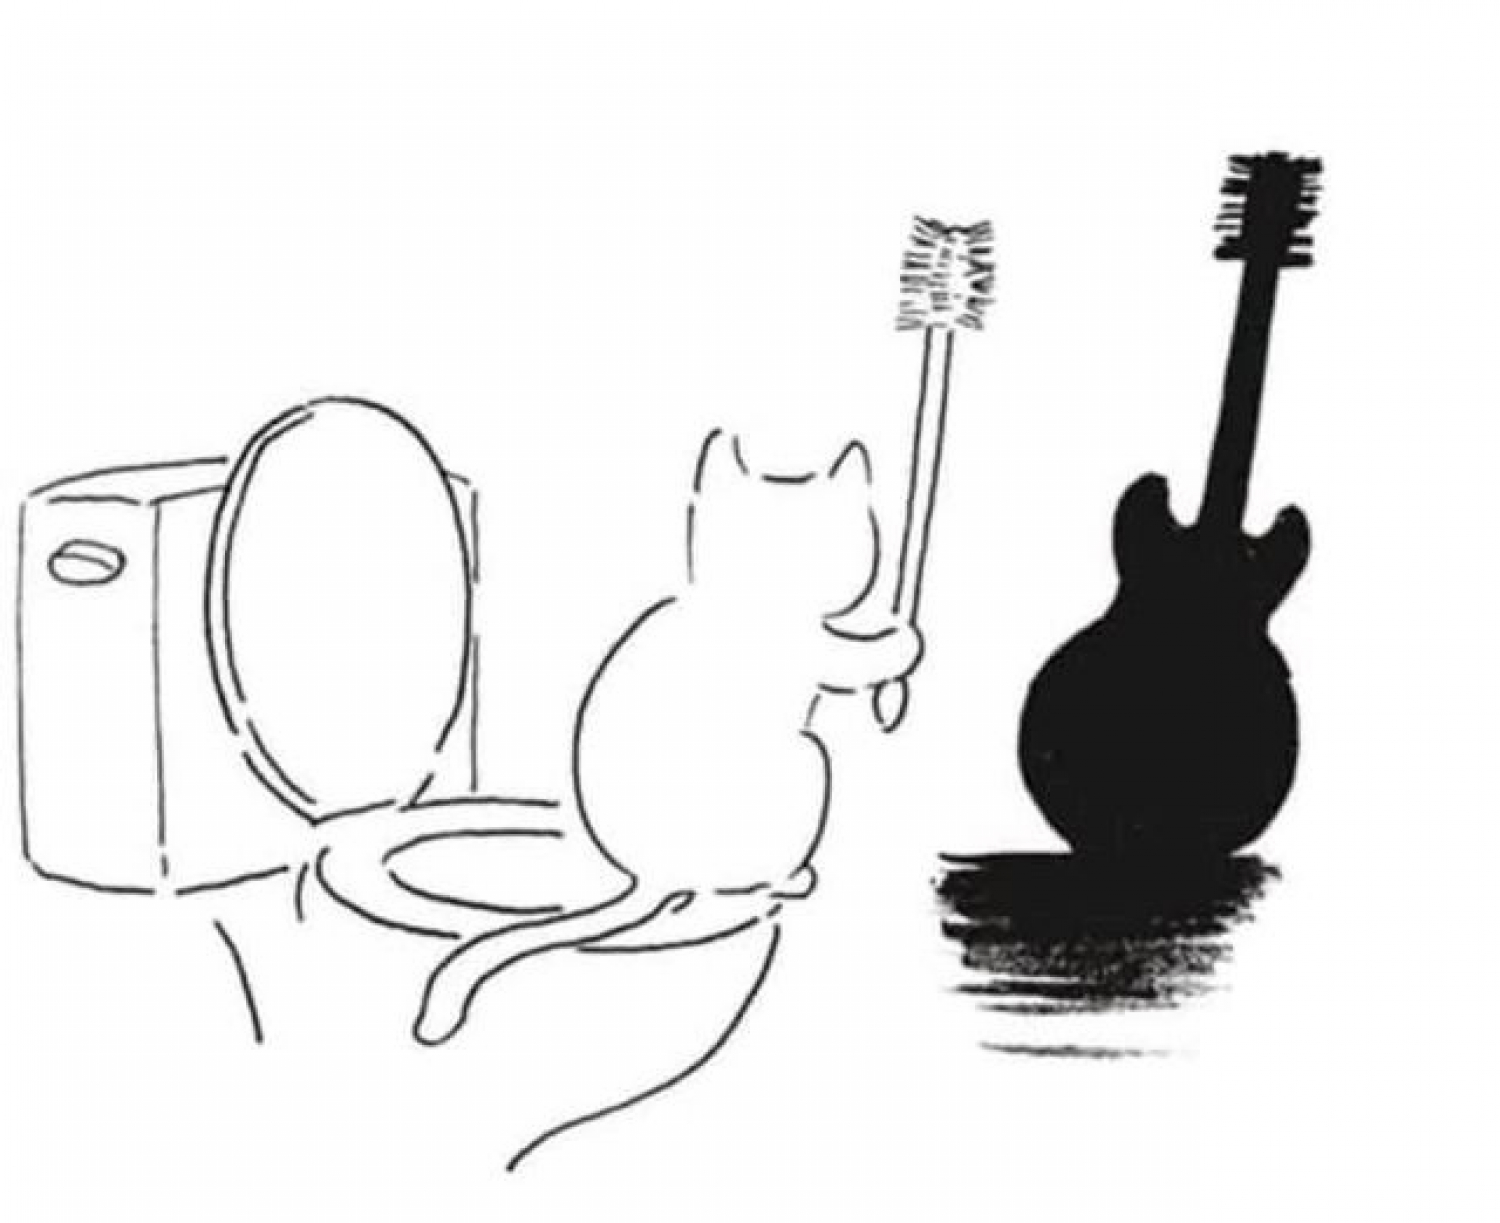 kytara je kočka se štětkou